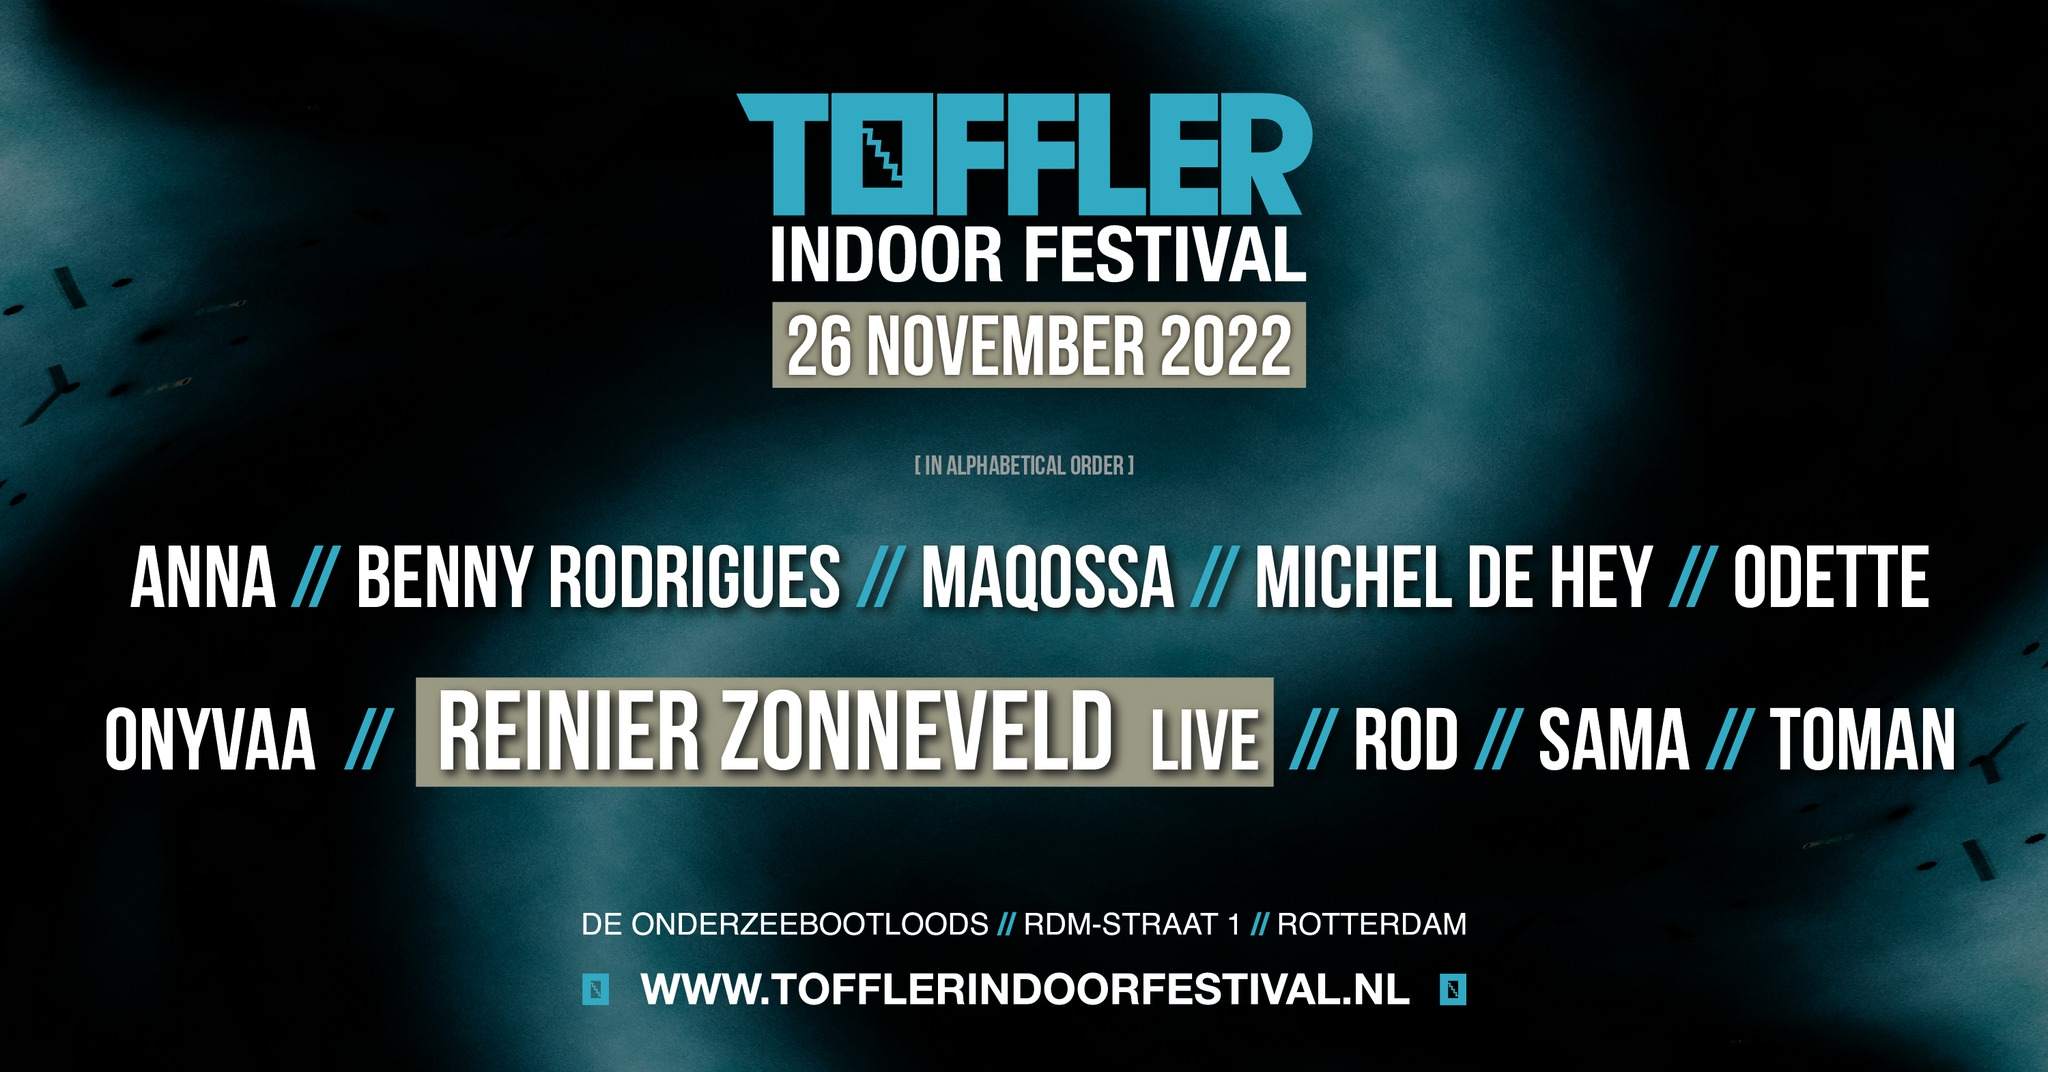 TOFFLER Indoor Festival - フライヤー表